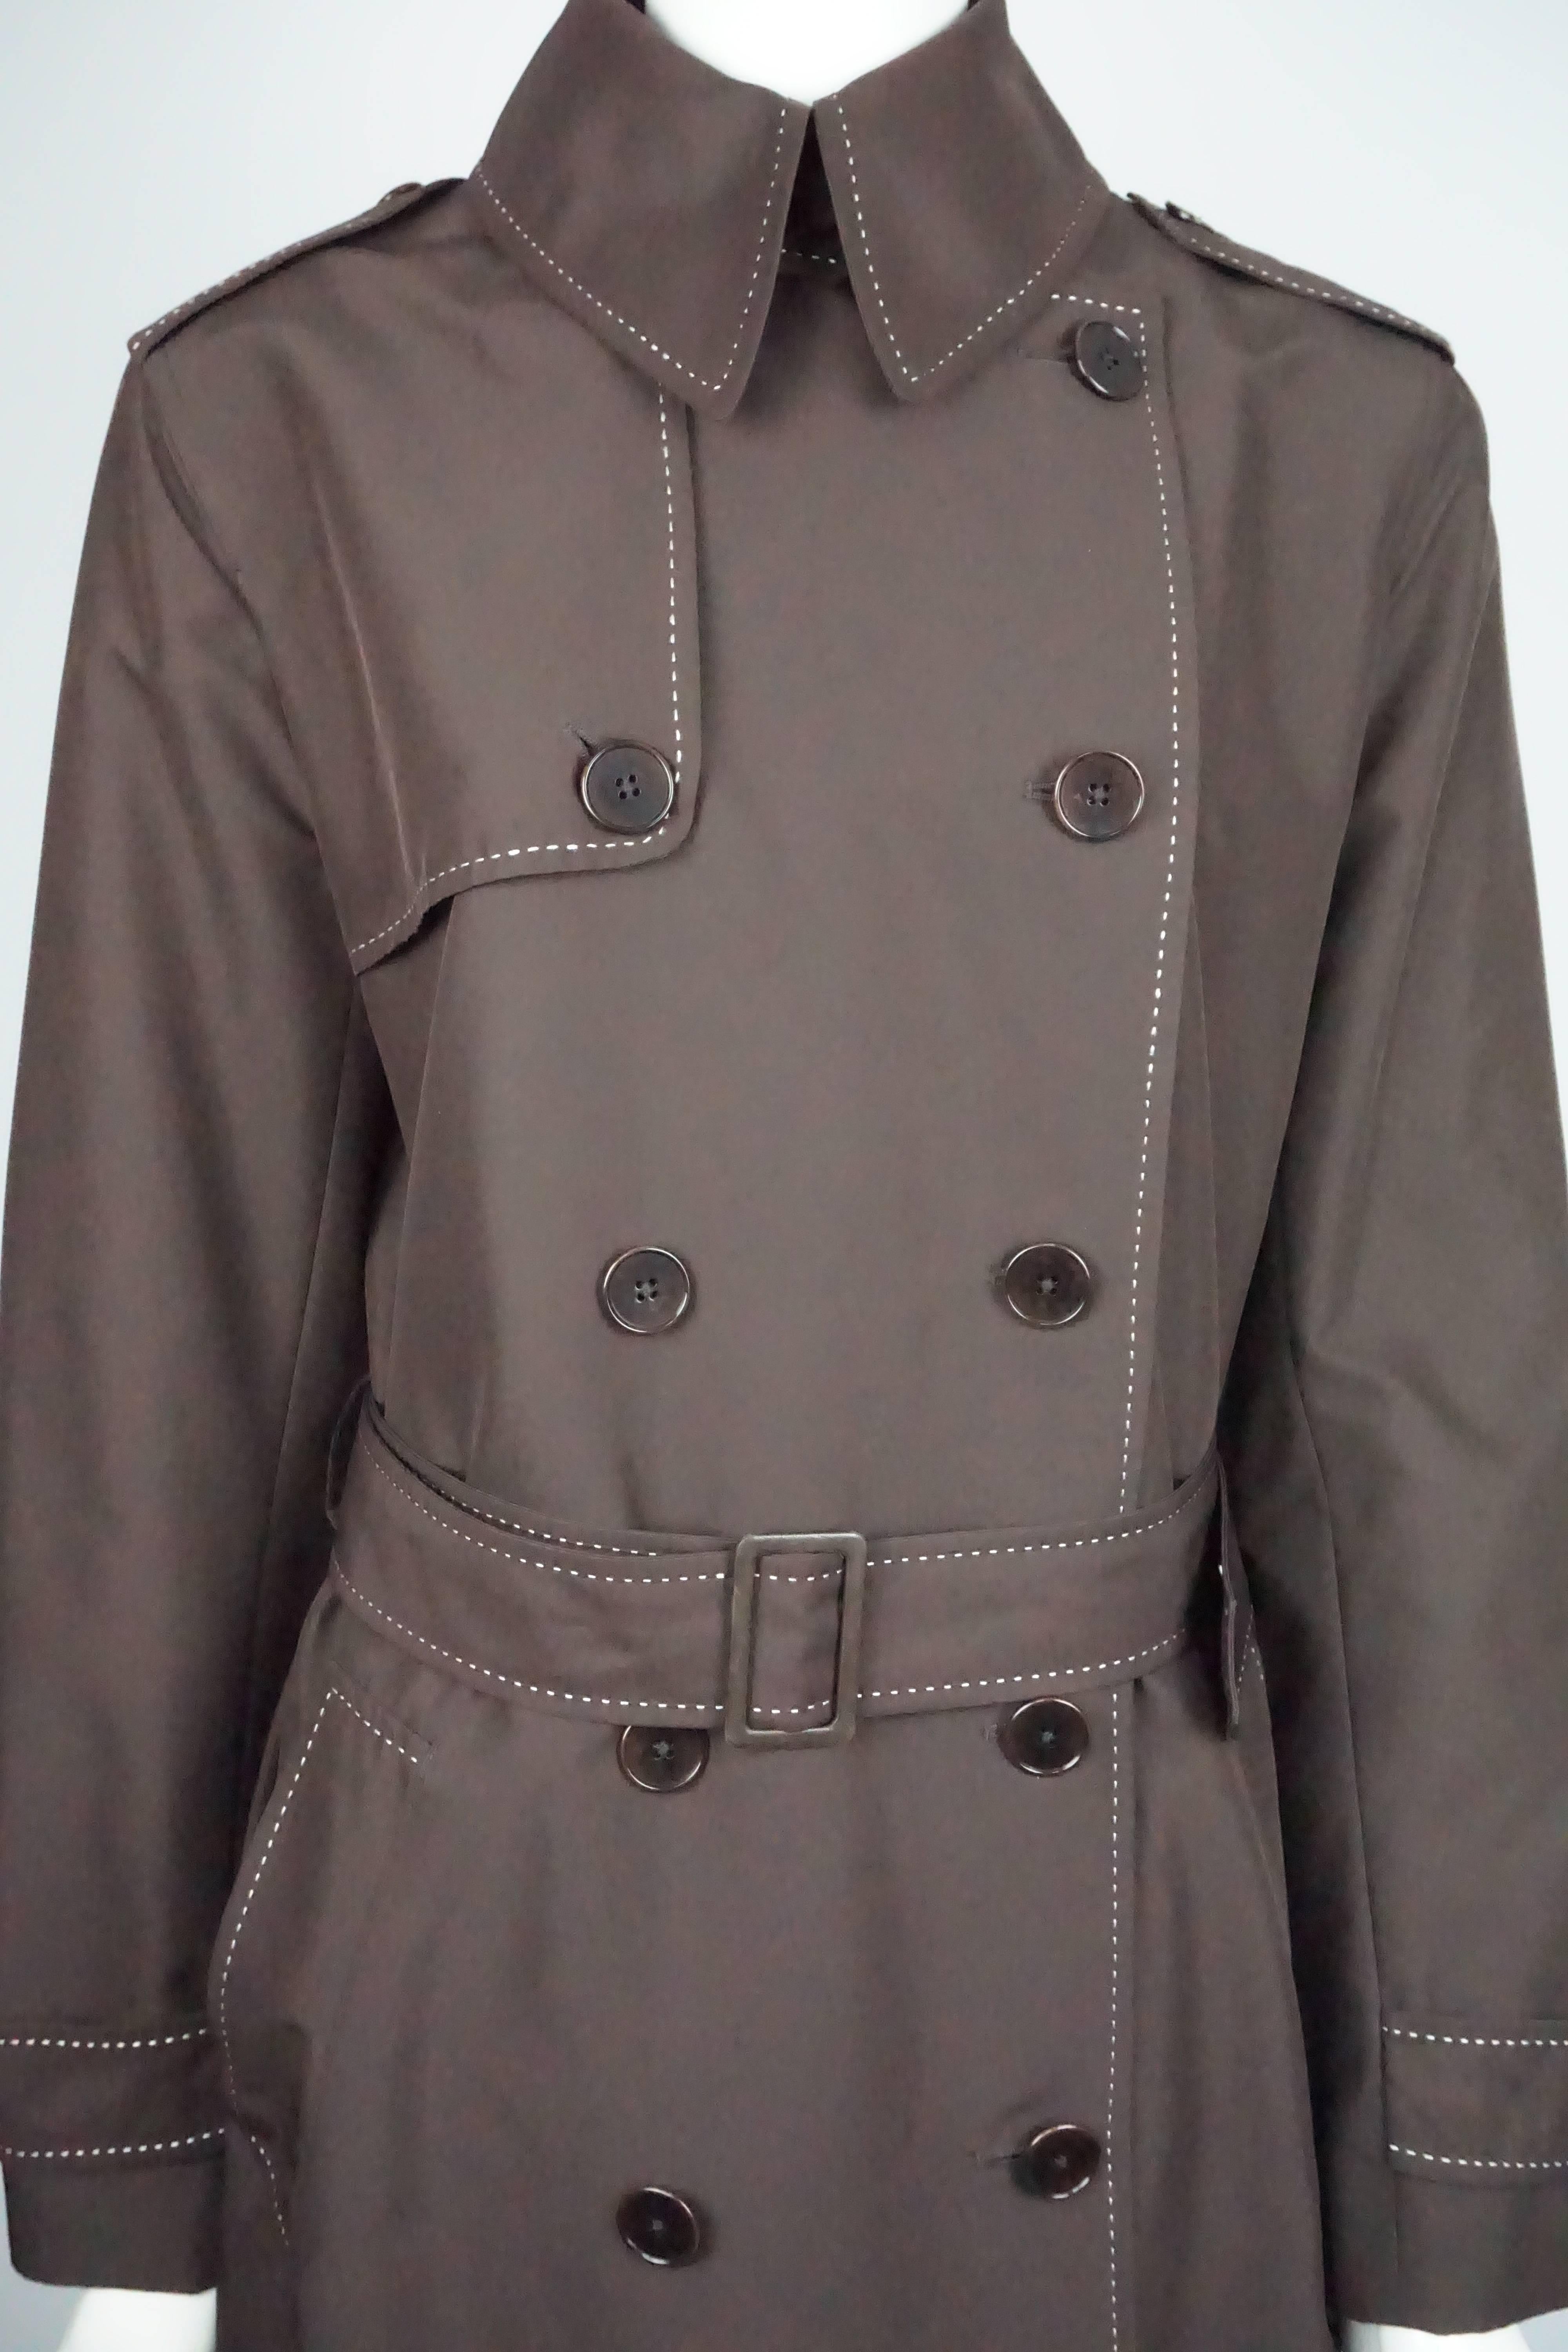 designer rain coat brown